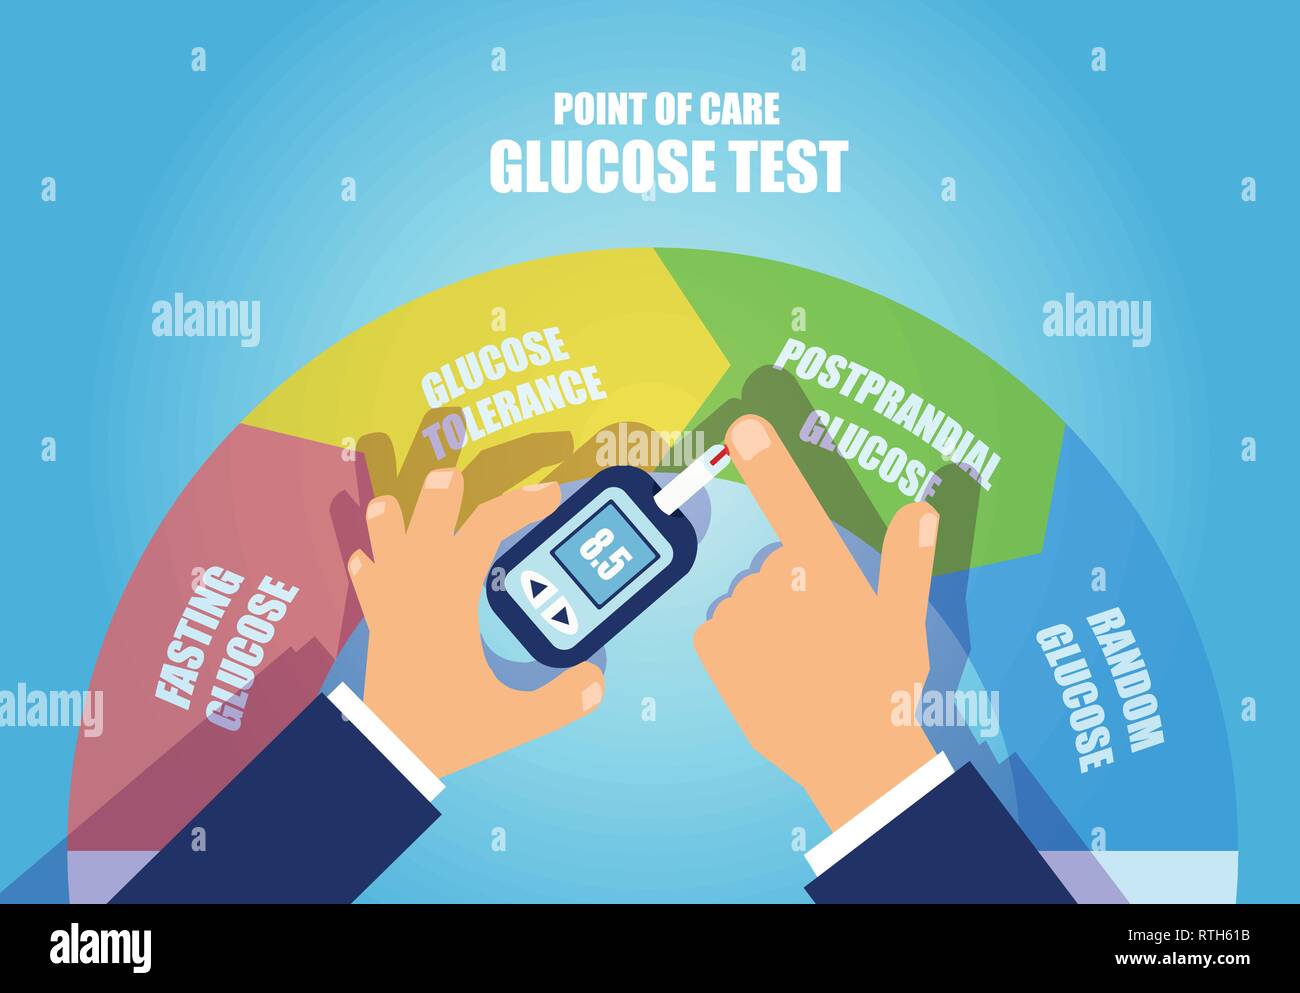 Diabetes Management mit Point-of-care-Konzept. Vektor eines Menschen messen Blutzuckerspiegel. Stock Vektor